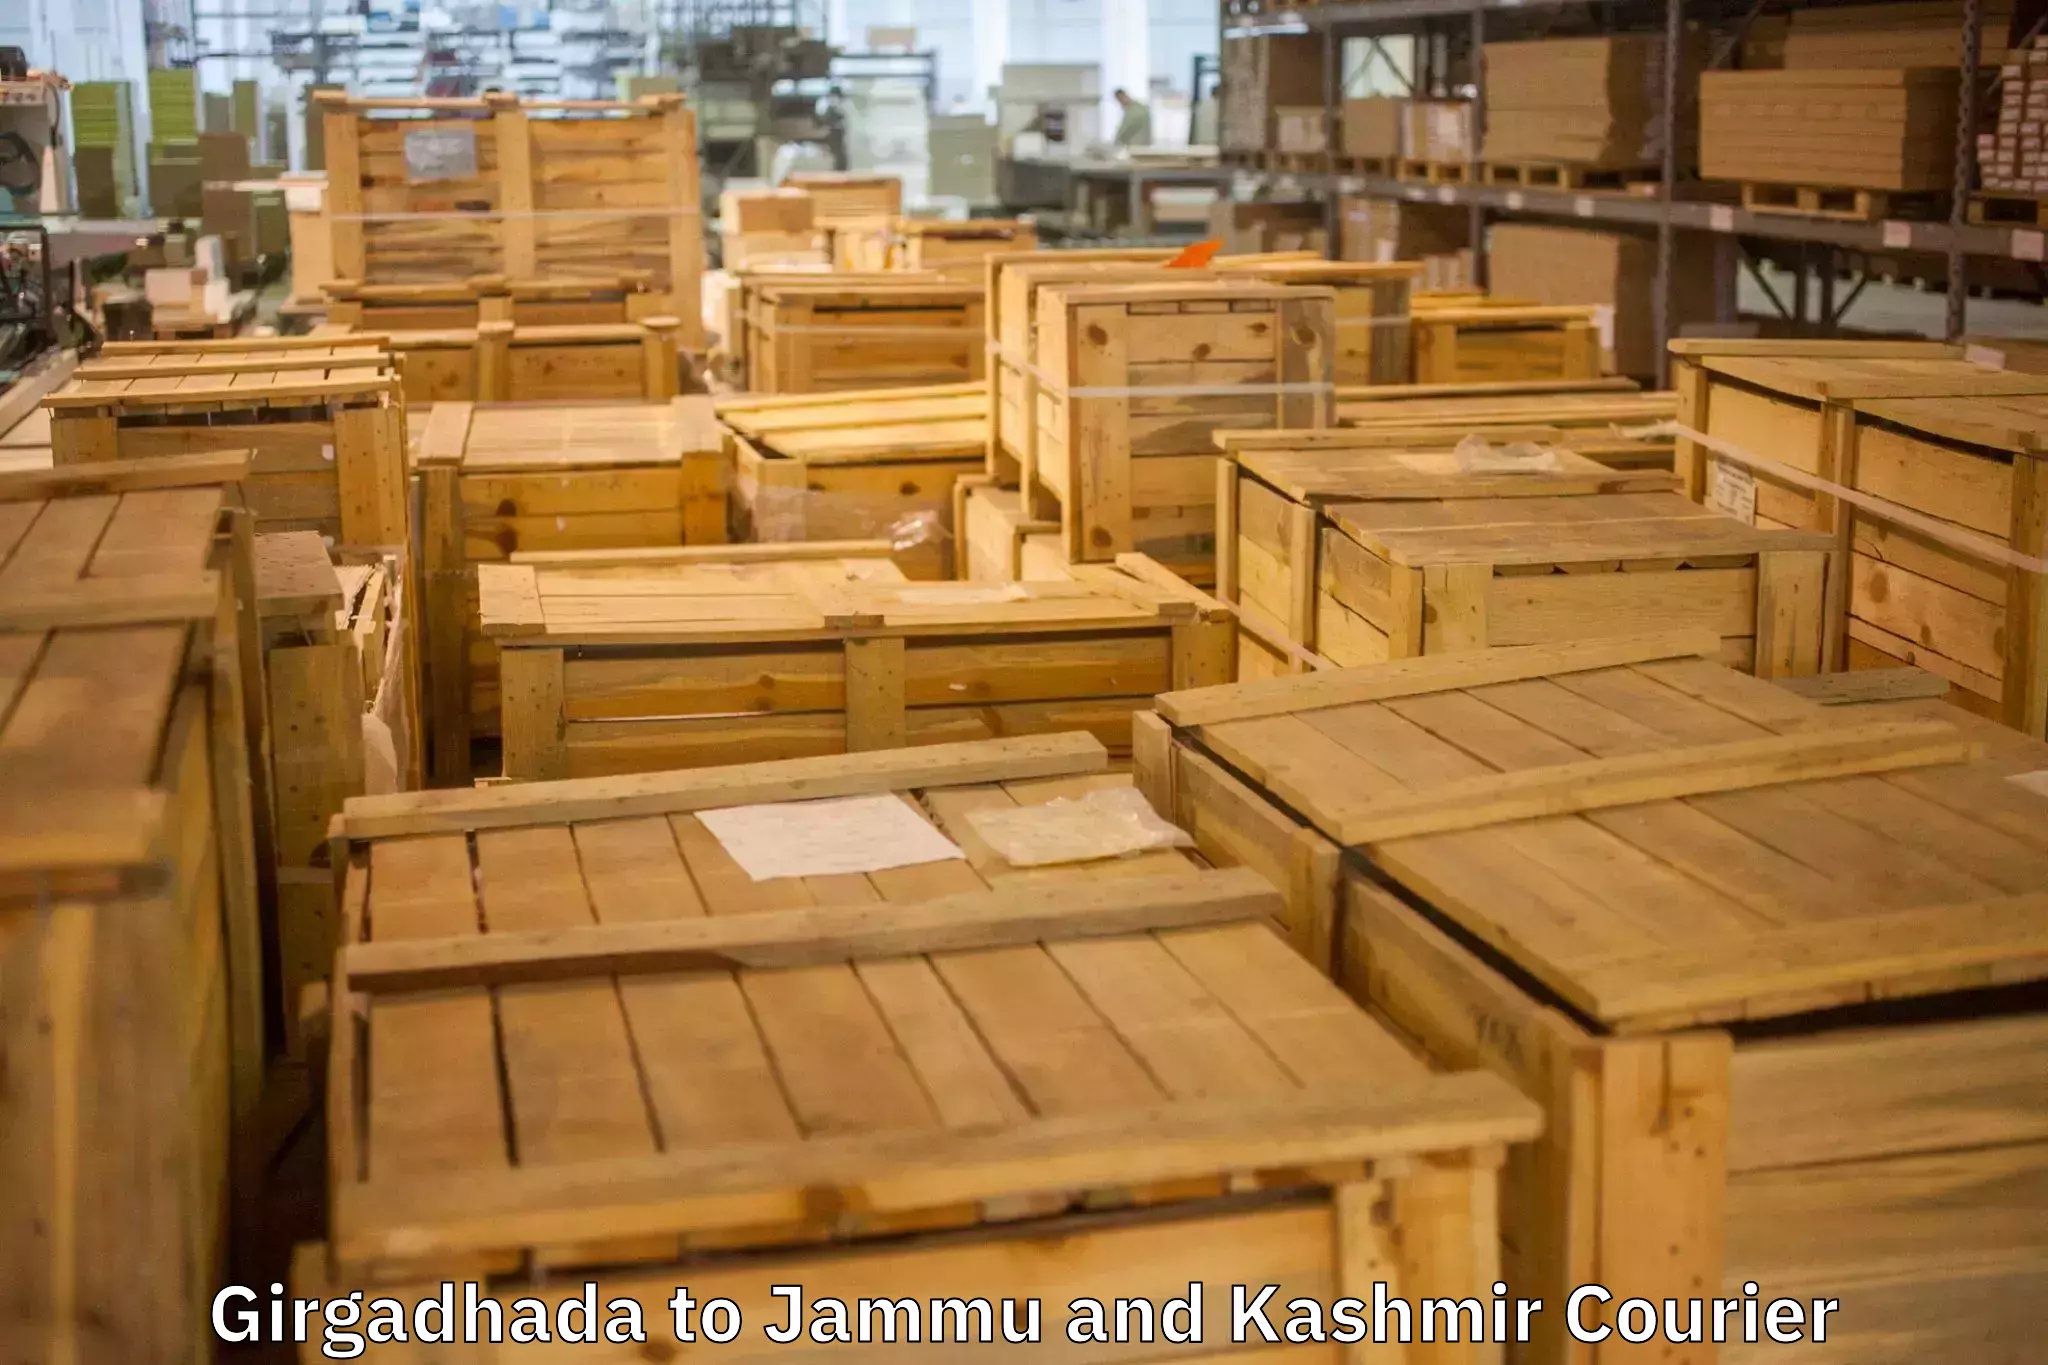 Trusted furniture transport in Girgadhada to Akhnoor